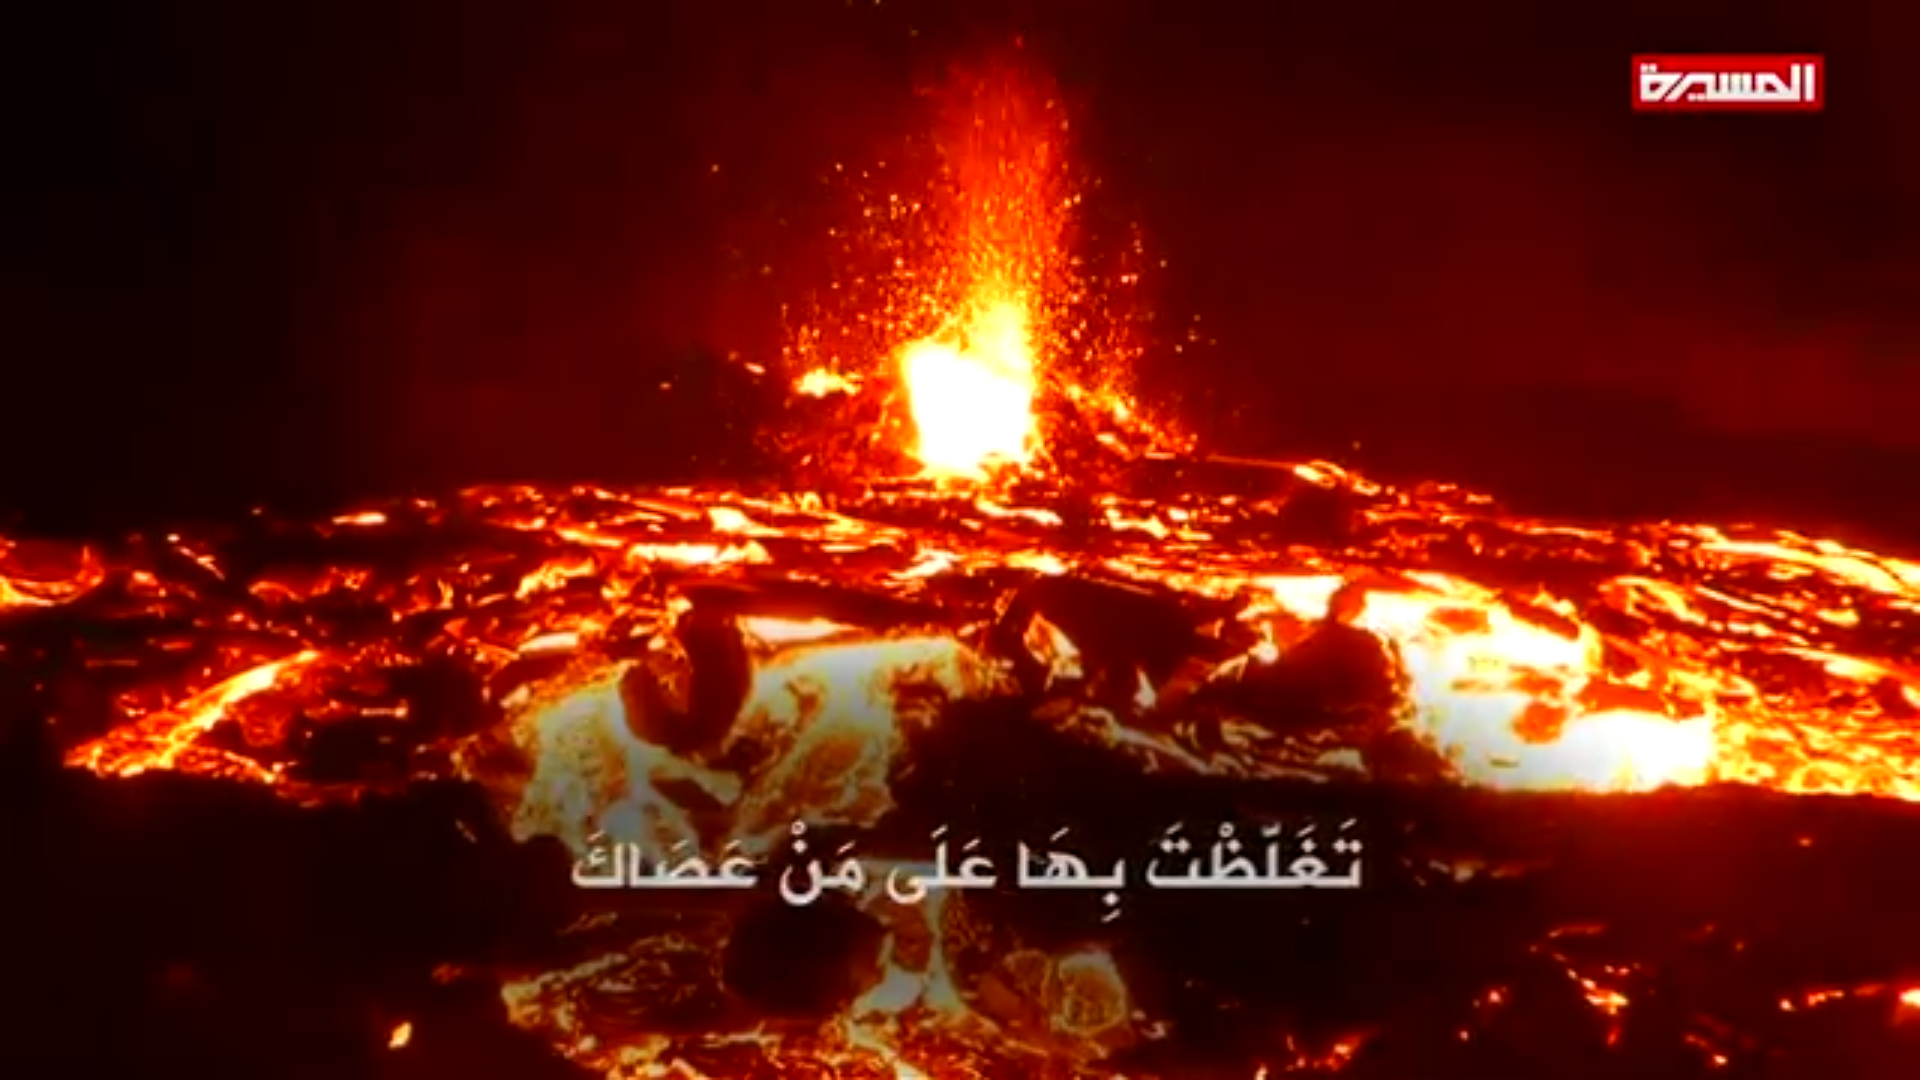 دعاء الإستعاذة بالله من نار جهنم | فرقة أنصار الله – 1441هـ